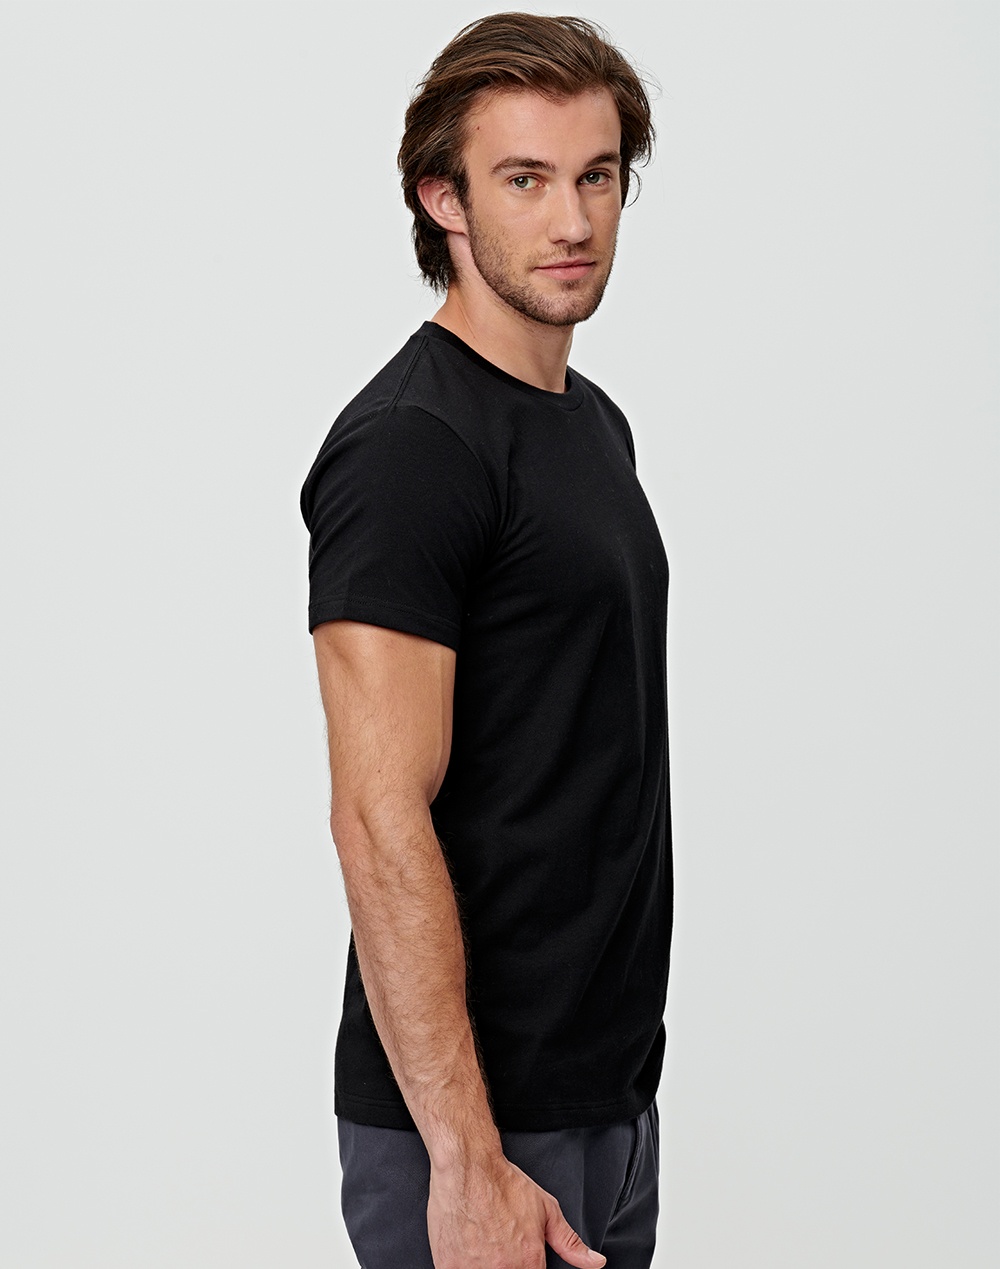 Custom Printed Premium T-Shirt Cotton Men's Online in Perth Australia